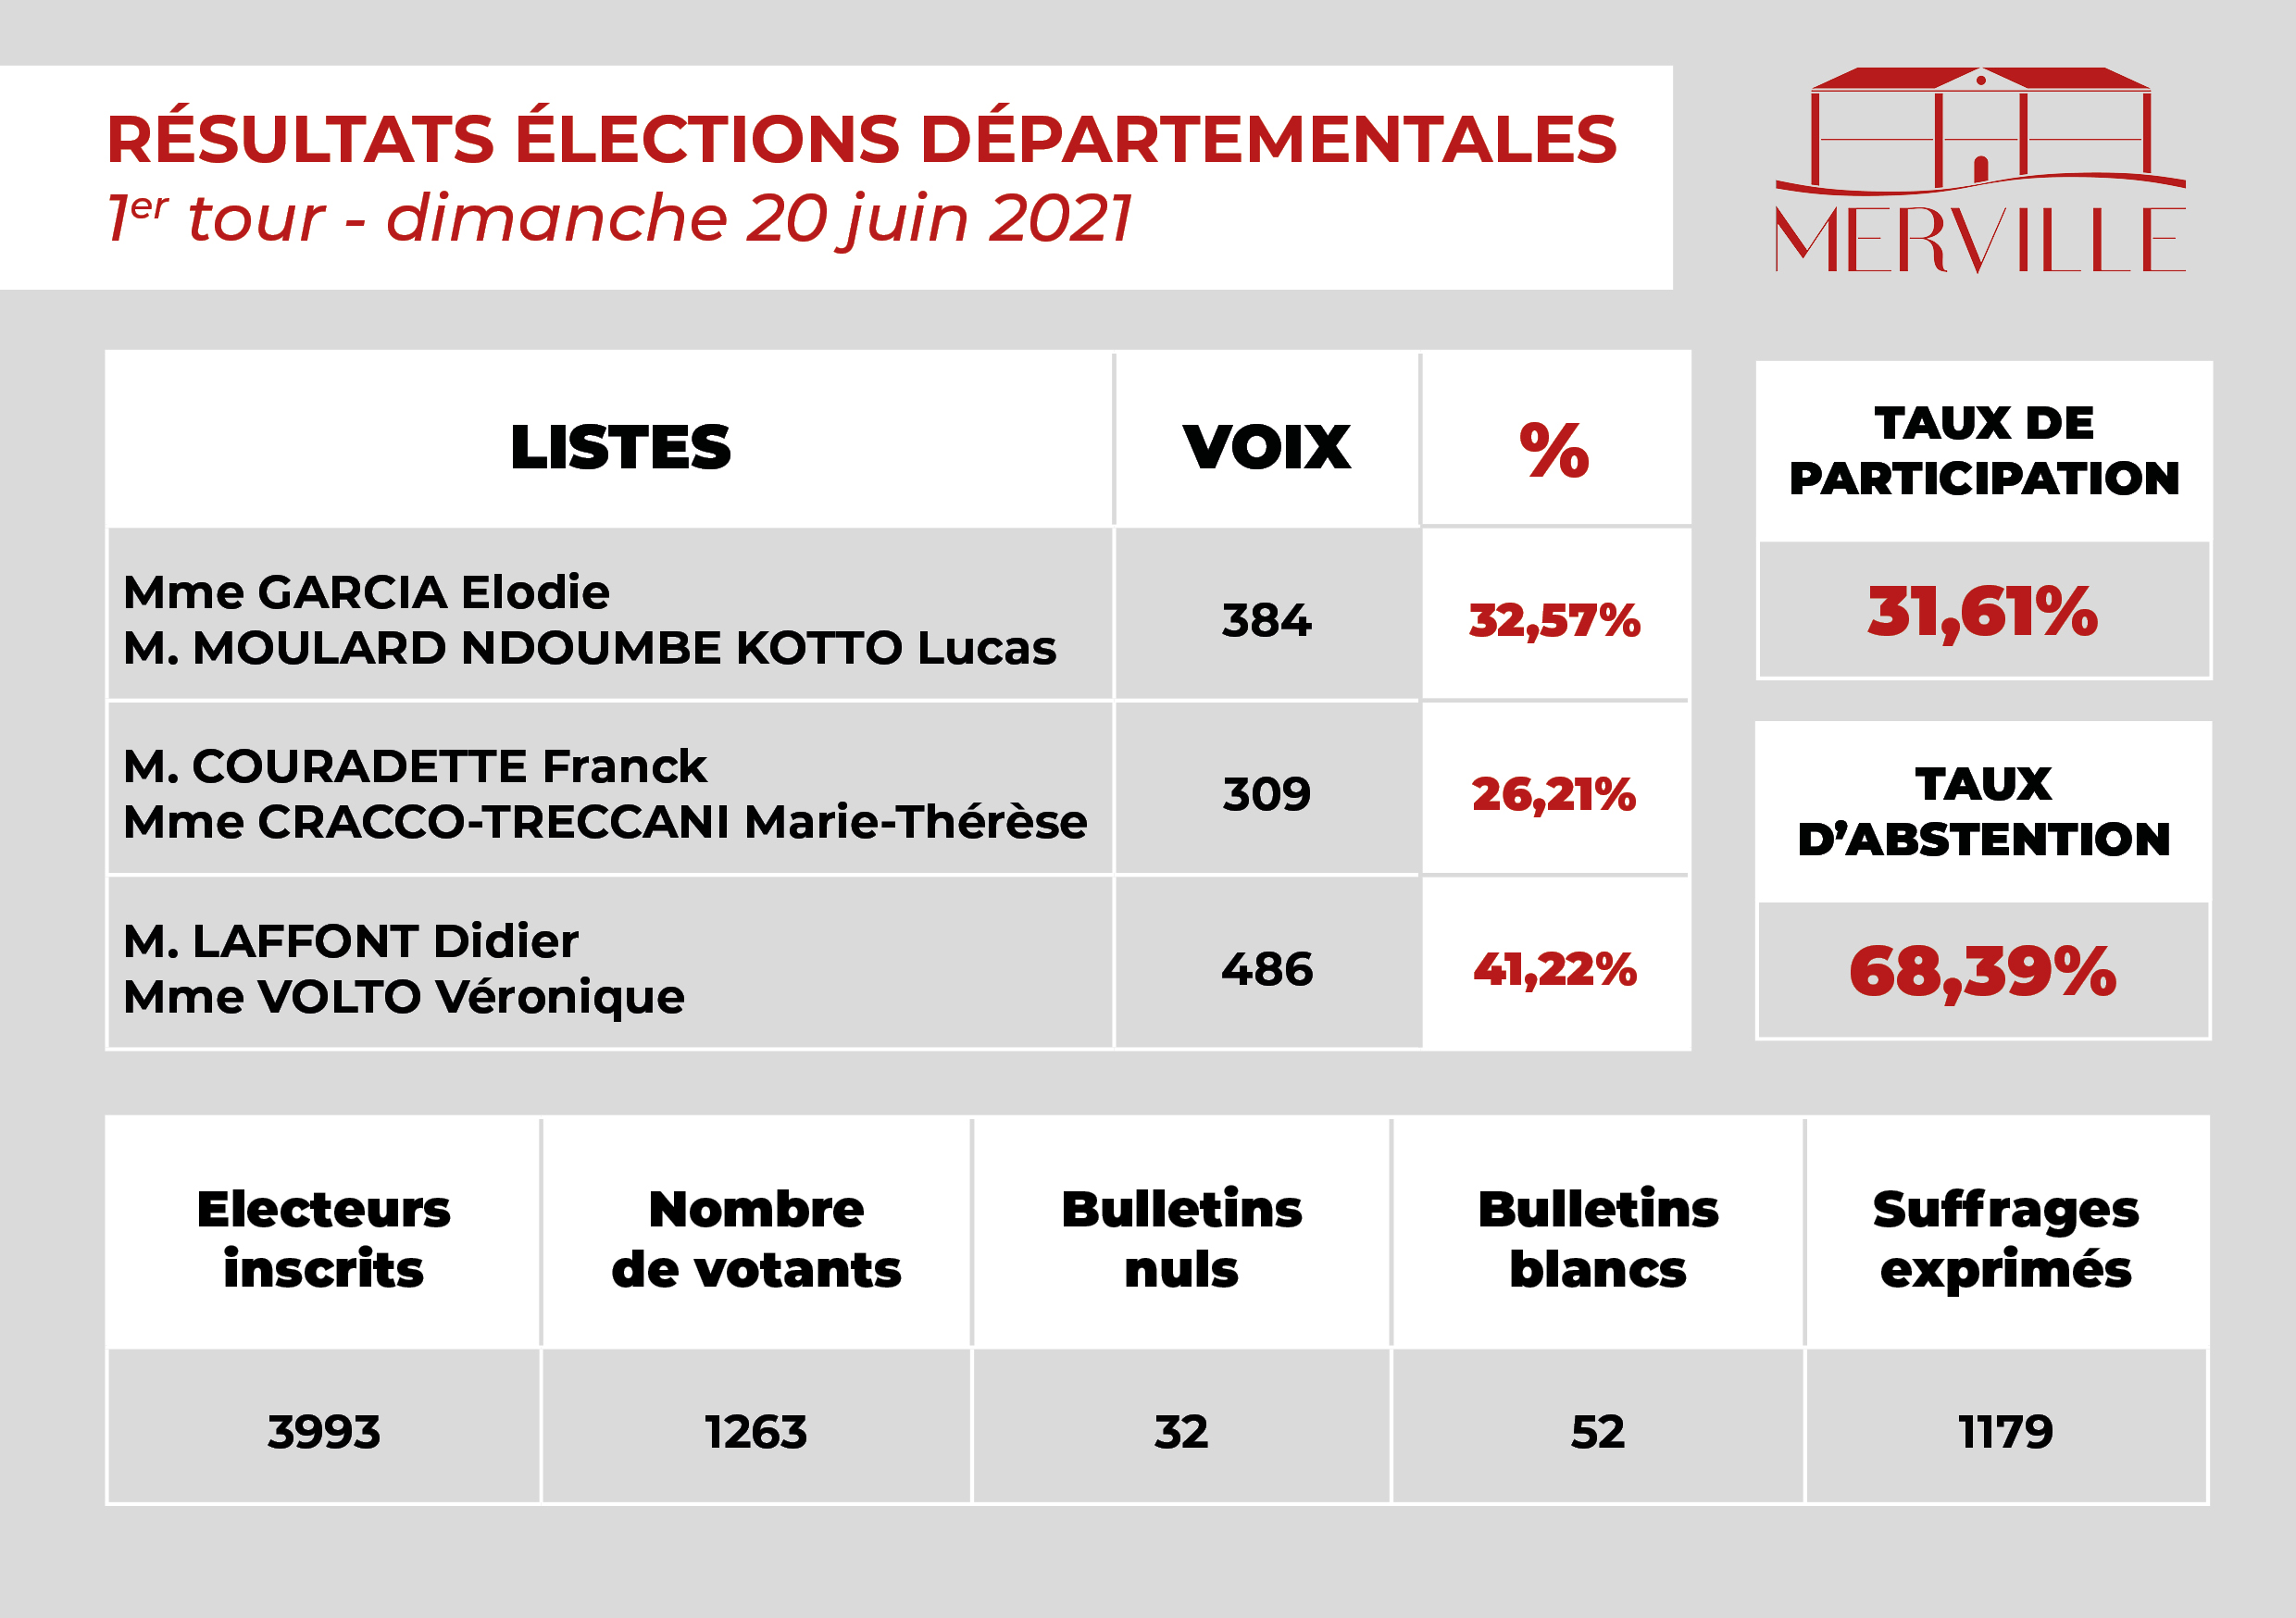 Résultats du 1er tour des élections départementales 2021 sur Merville. Monsieur Laffont Didier et Madame Volto Véronique en tête avec 41,22% des voix. Madame Garcia Elodie et Monsieur Moulard Ndoumbe Kotto Lucas ont obtenu 32,57% des voix. Monsieur Couradette Franck et Madame Cracco-Treccani Marie-Thérèse ont obtenu 26,21% des voix.Taux de participation : 31,61%, taux d'abstention : 68,39%.